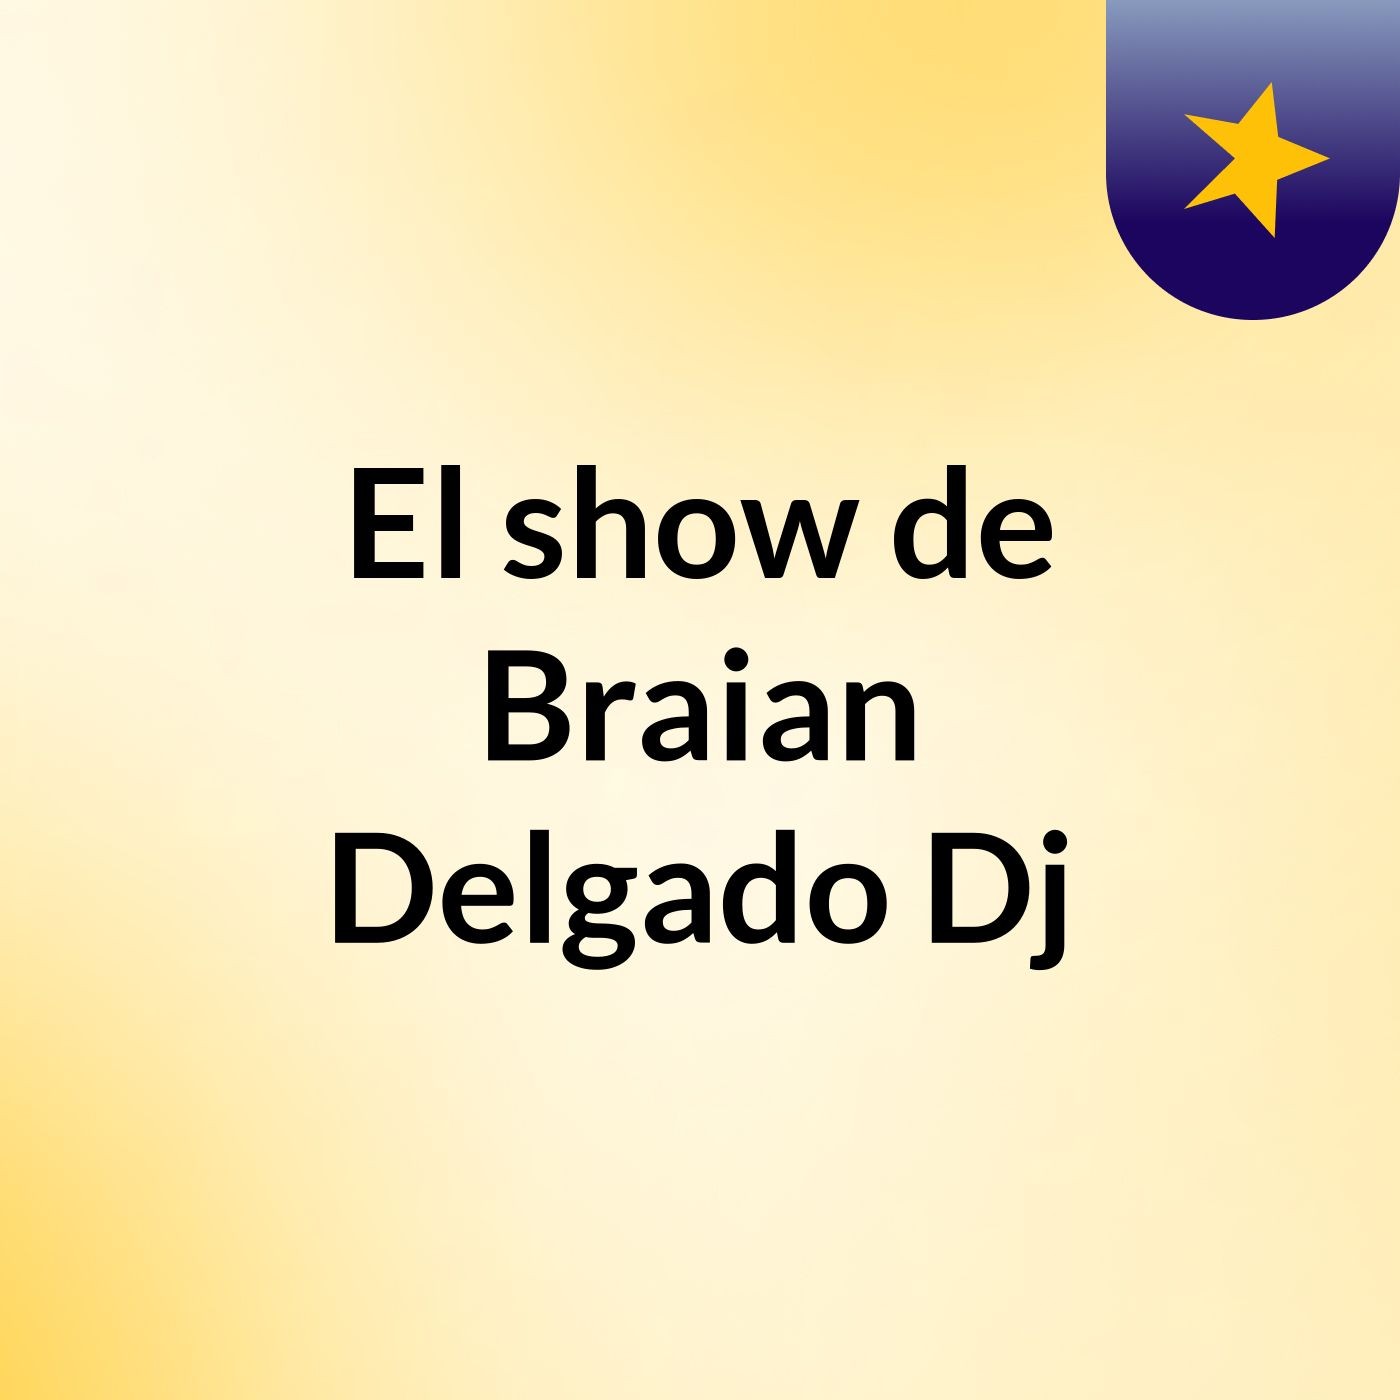 El show de Braian Delgado Dj